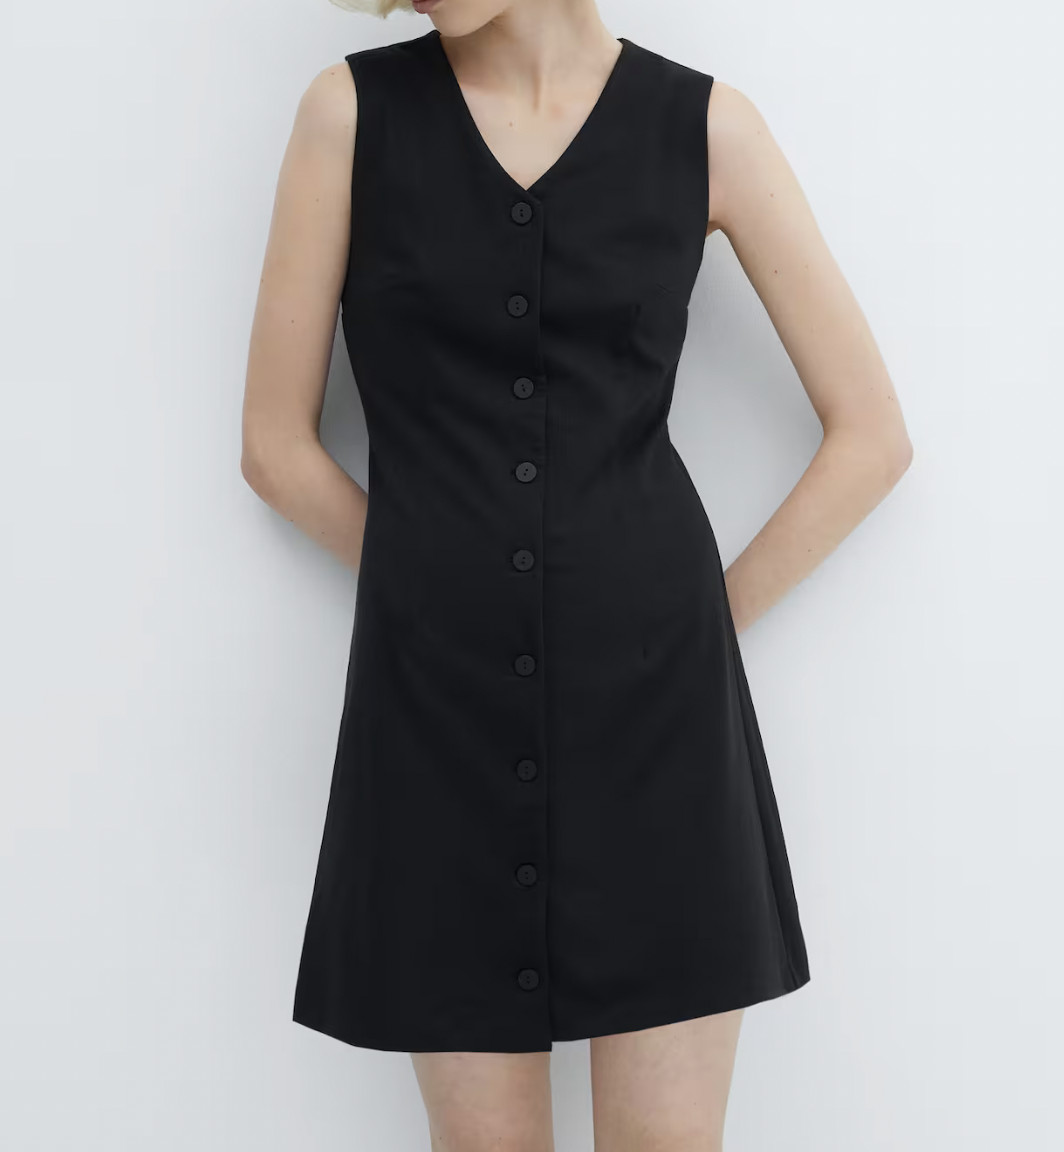 Маленькое черное платье — must-have гардероба каждой девушки. 8 стильных опций на любой бюджет